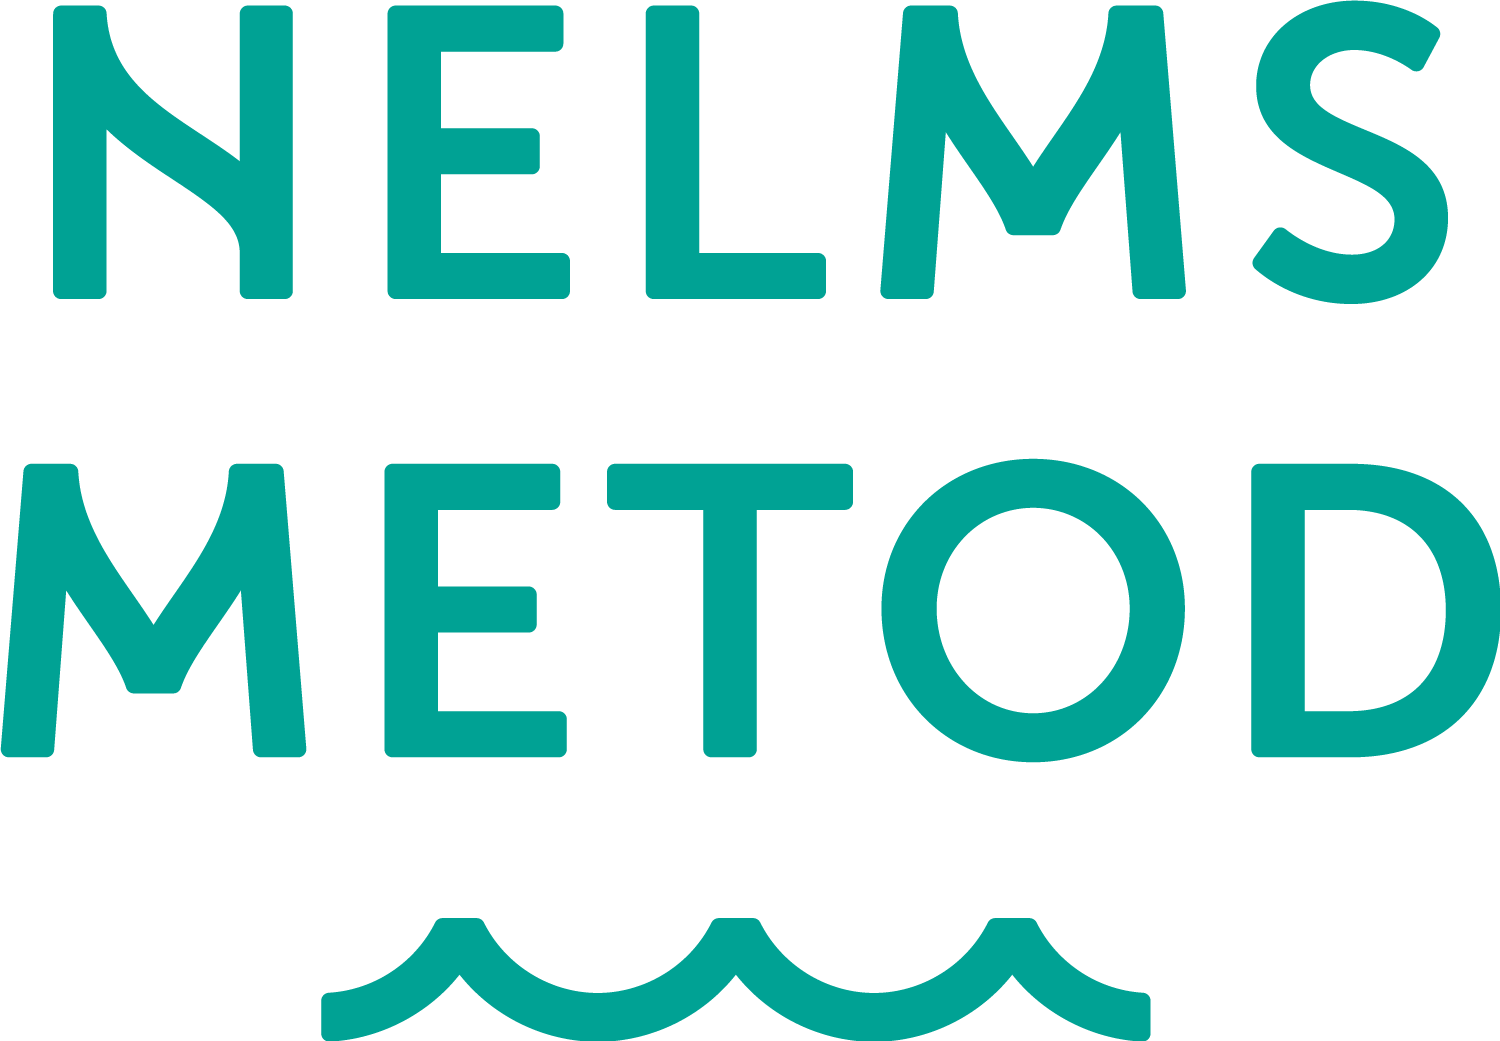 Nelms Metod logotyp